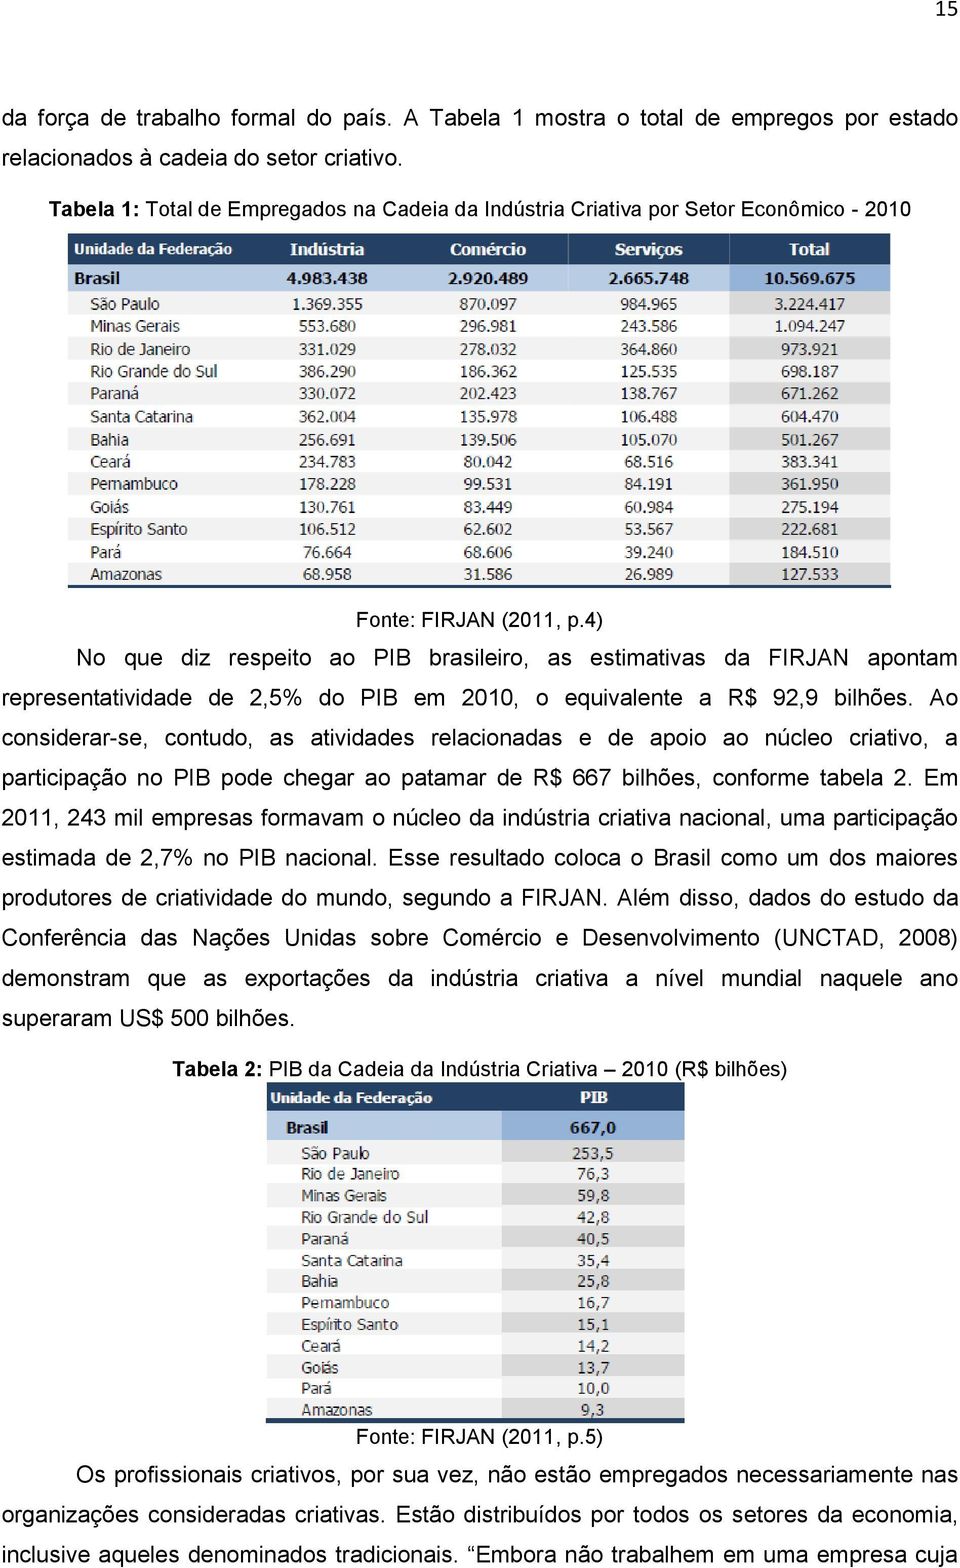 4) No que diz respeito ao PIB brasileiro, as estimativas da FIRJAN apontam representatividade de 2,5% do PIB em 2010, o equivalente a R$ 92,9 bilhões.